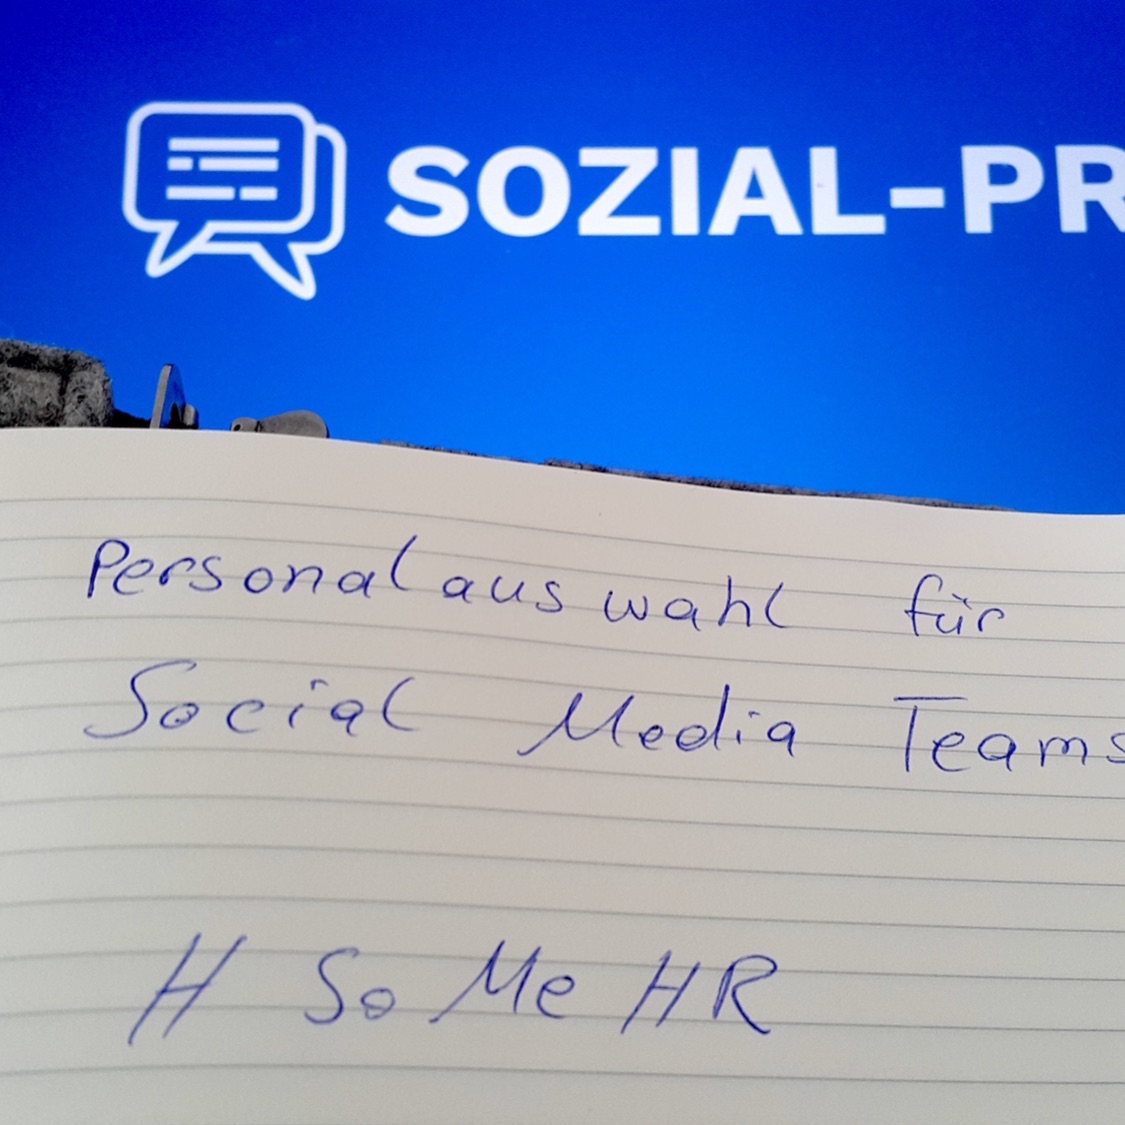 Personalauswahl für Social Media Teams Teil 3: Praktische Erfahrung